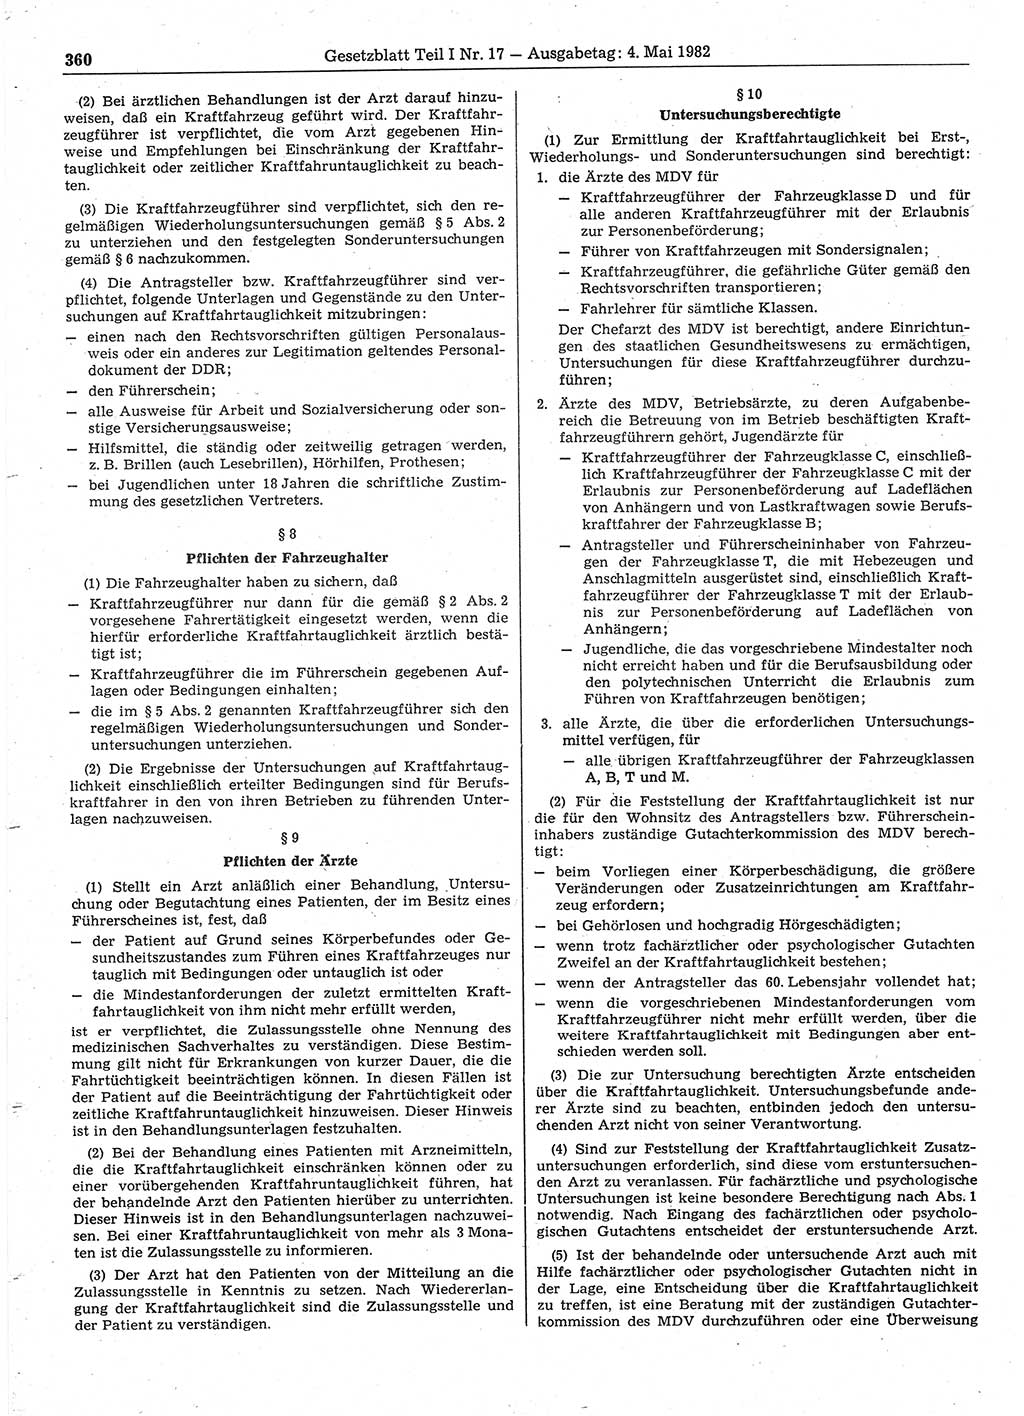 Gesetzblatt (GBl.) der Deutschen Demokratischen Republik (DDR) Teil Ⅰ 1982, Seite 360 (GBl. DDR Ⅰ 1982, S. 360)